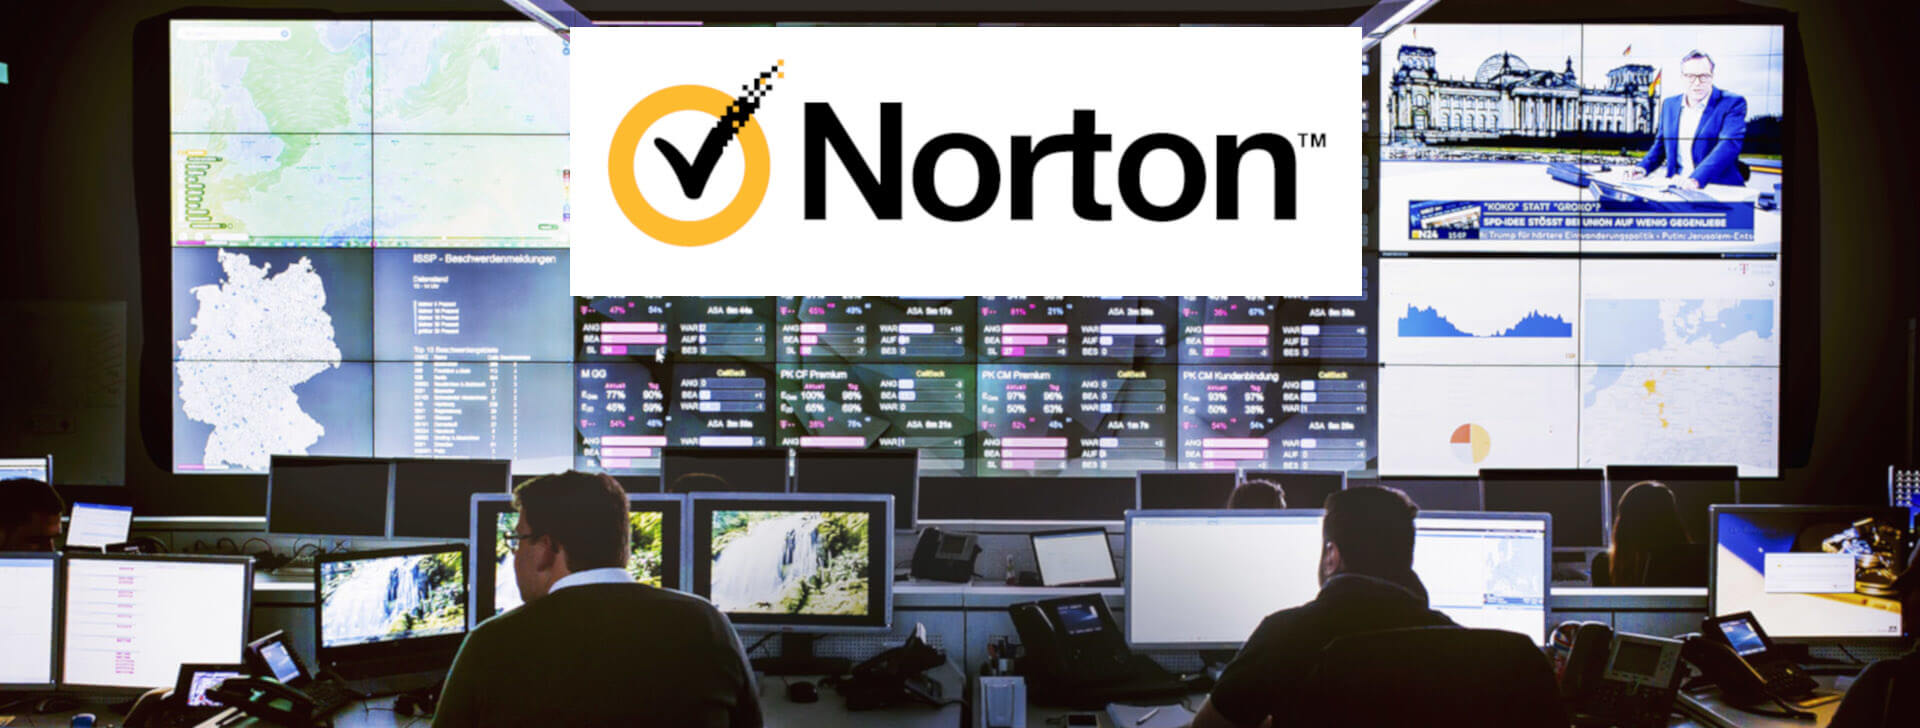 norton security online vs premium